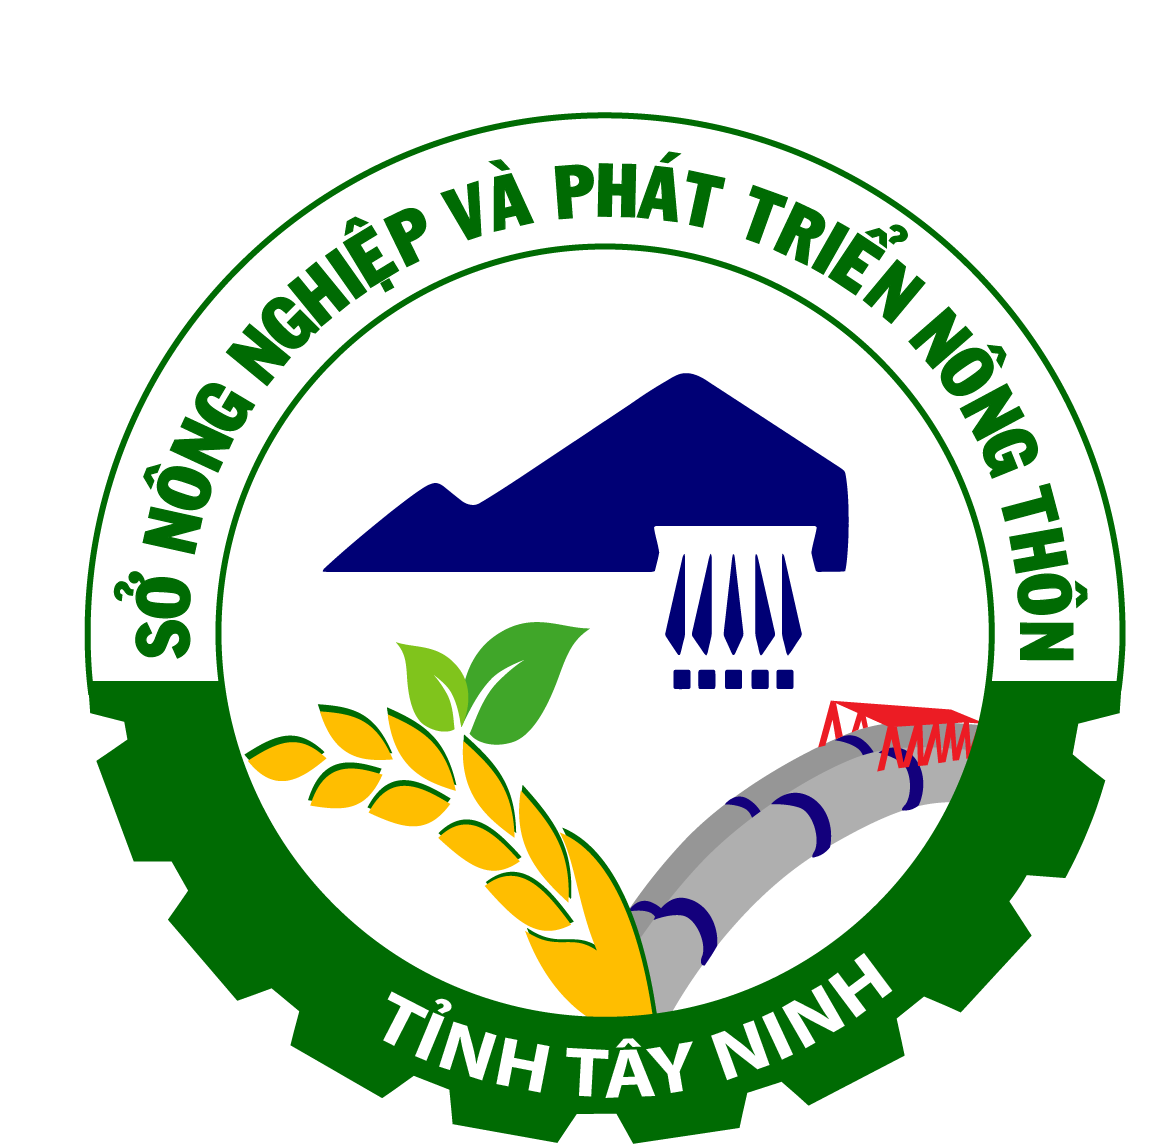 Quyết định công bố danh mục và quy trình nội bộ giải quyết thủ tục hành chính sửa đổi, bổ sung lĩnh vực Thú y thuộc thẩm quyền giải quyết của Sở Nông nghiệp và Phát triển nông thôn tỉnh Tây Ninh